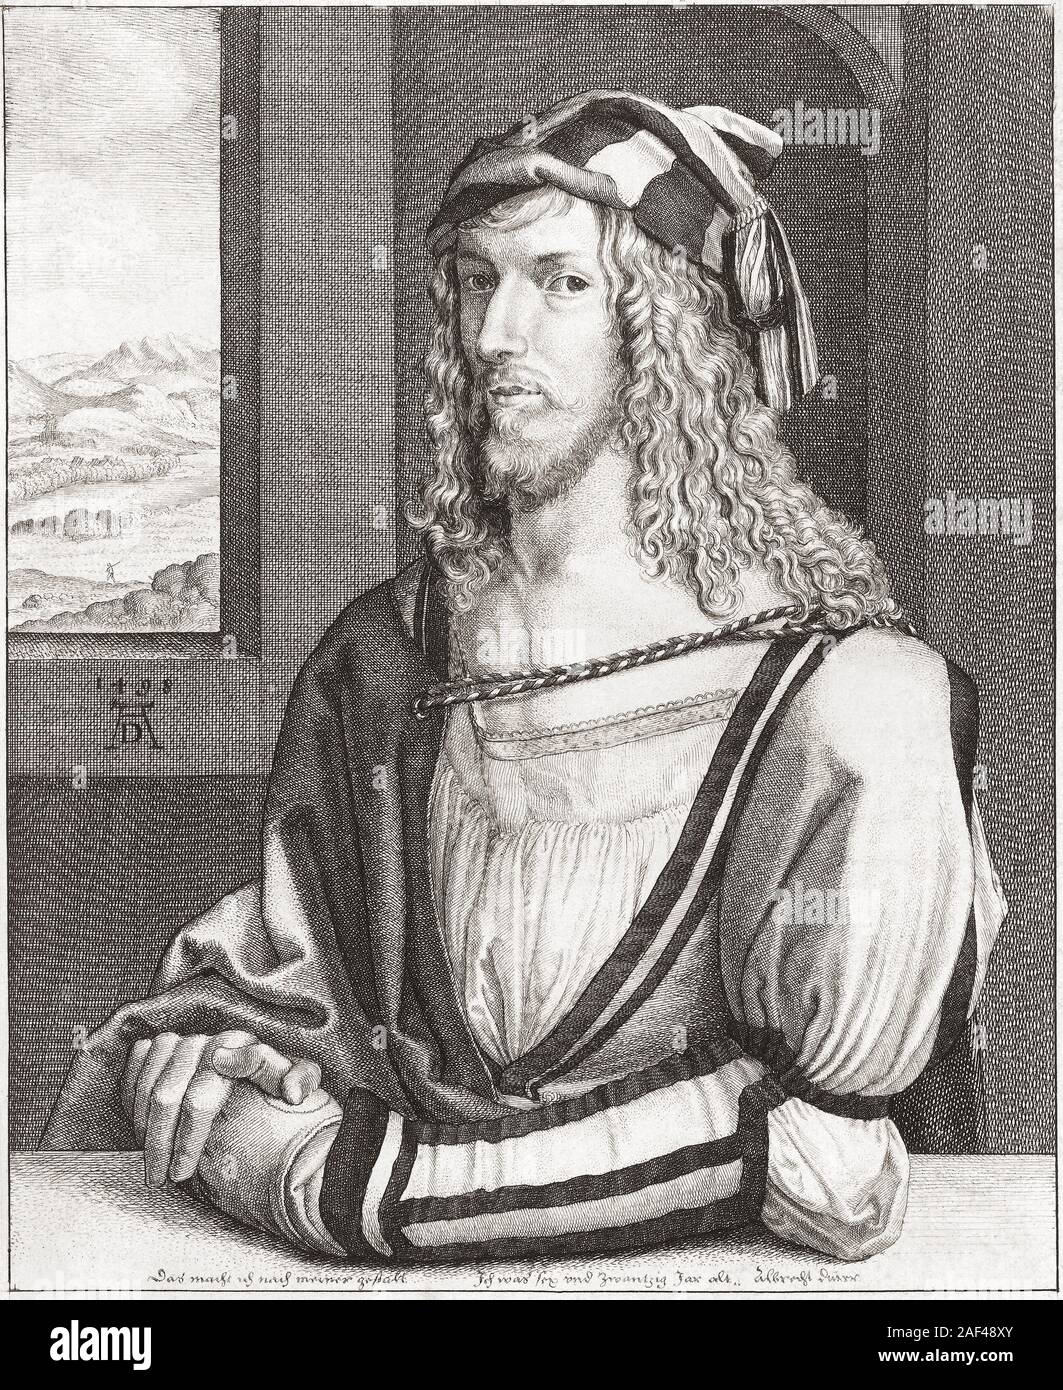 Albrecht Dürer, 1471 - 1528. German painter, printmaker and theorist. Engraving by Wenceslaus Hollar after Durer’s self portrait. Stock Photo